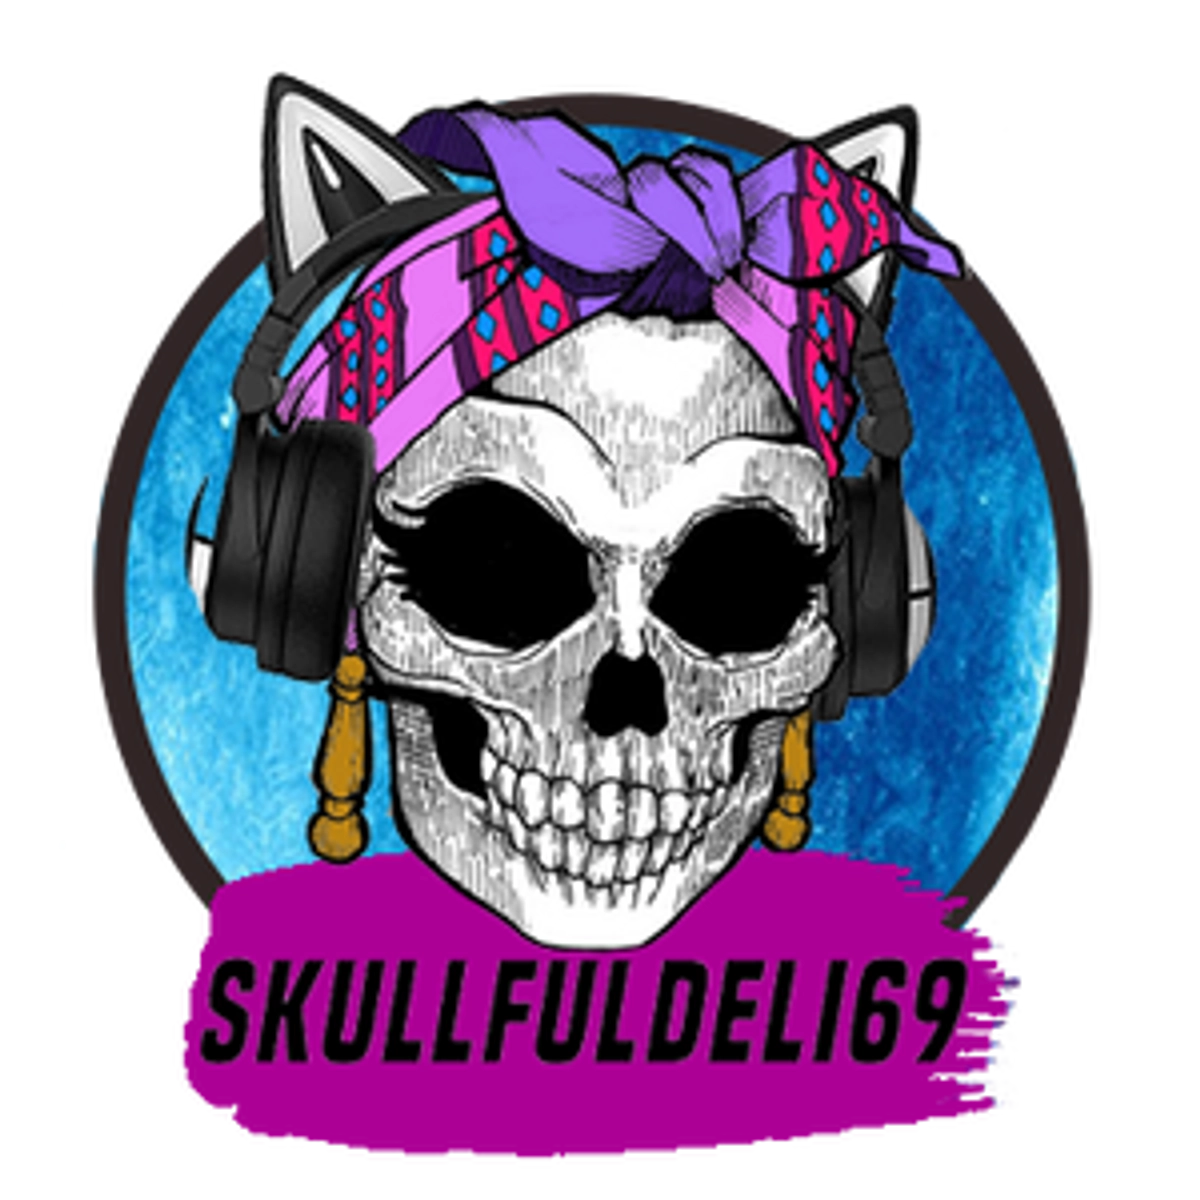 skullfuldeli69